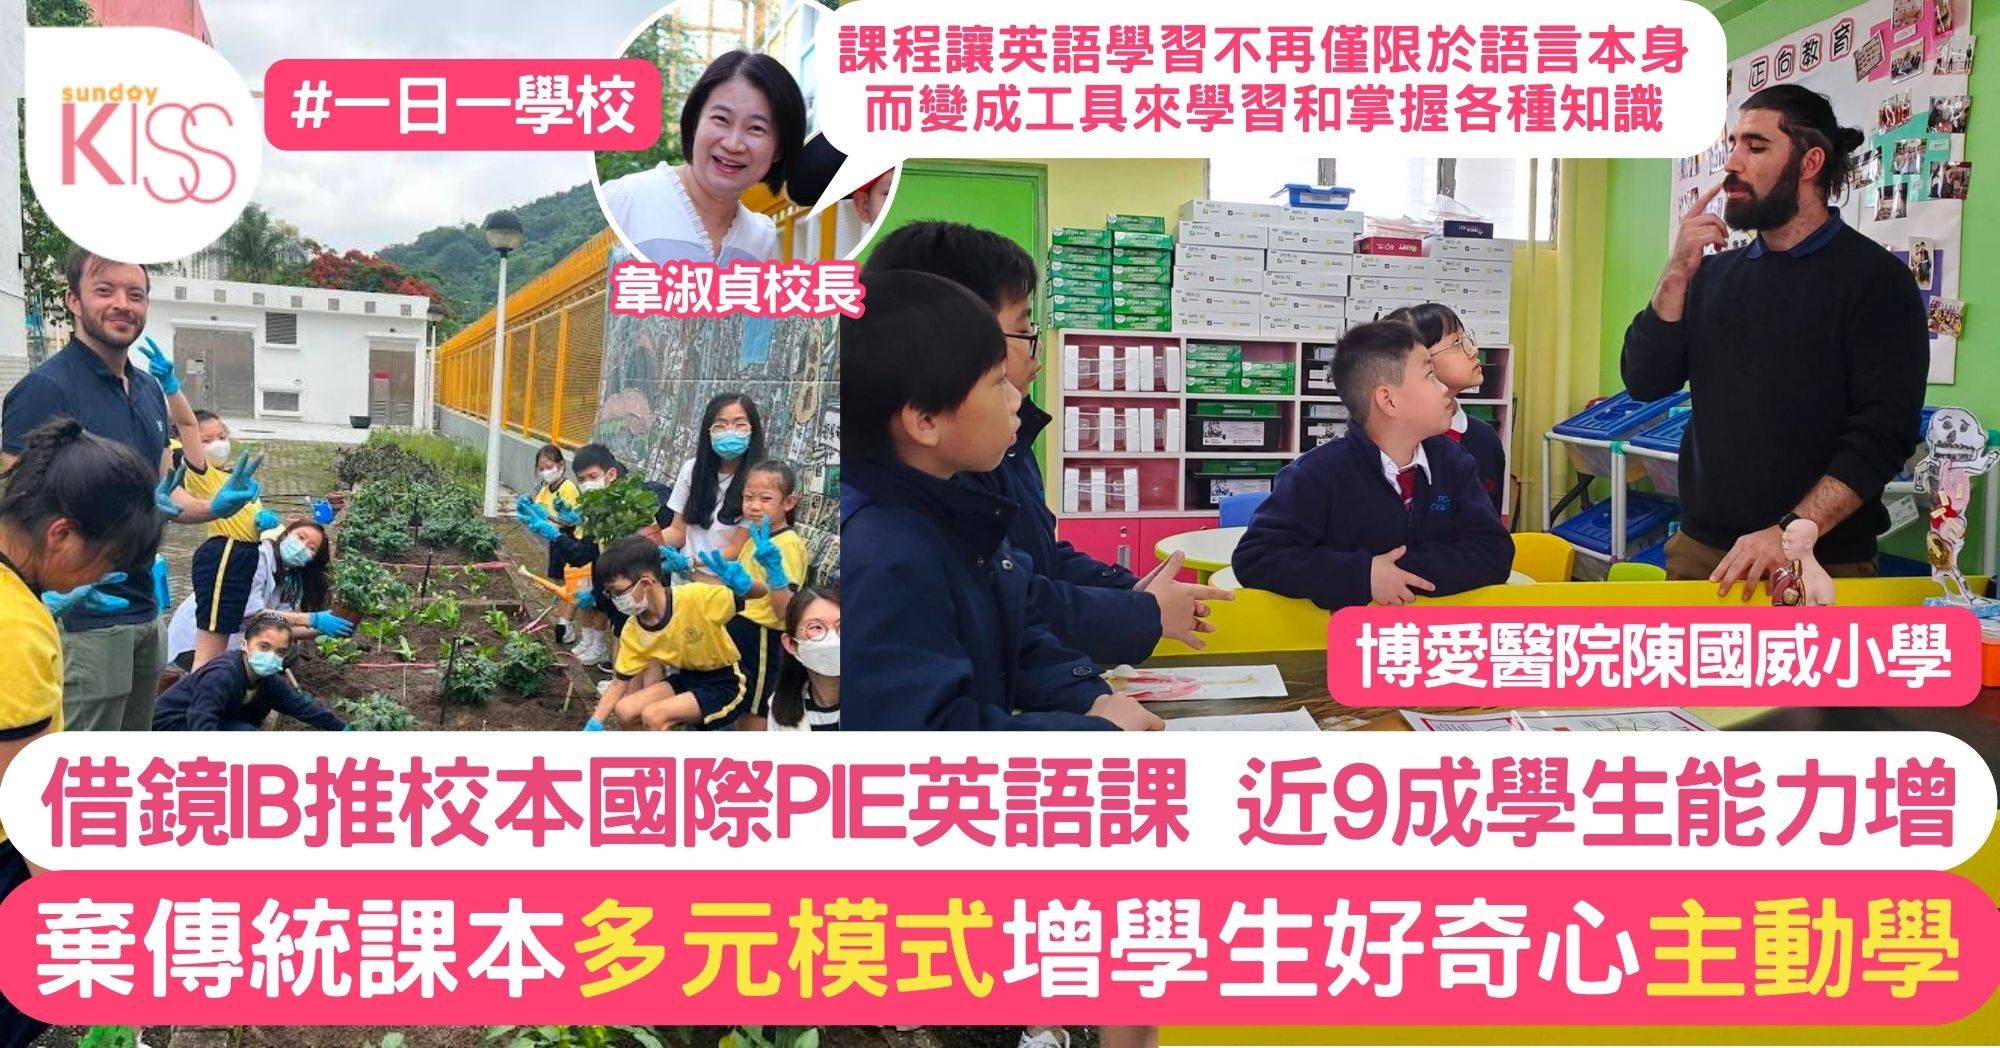 陳國威小學參考IB推PIE課程 活用英語有成效 約9成學生口語＋閱讀力提升